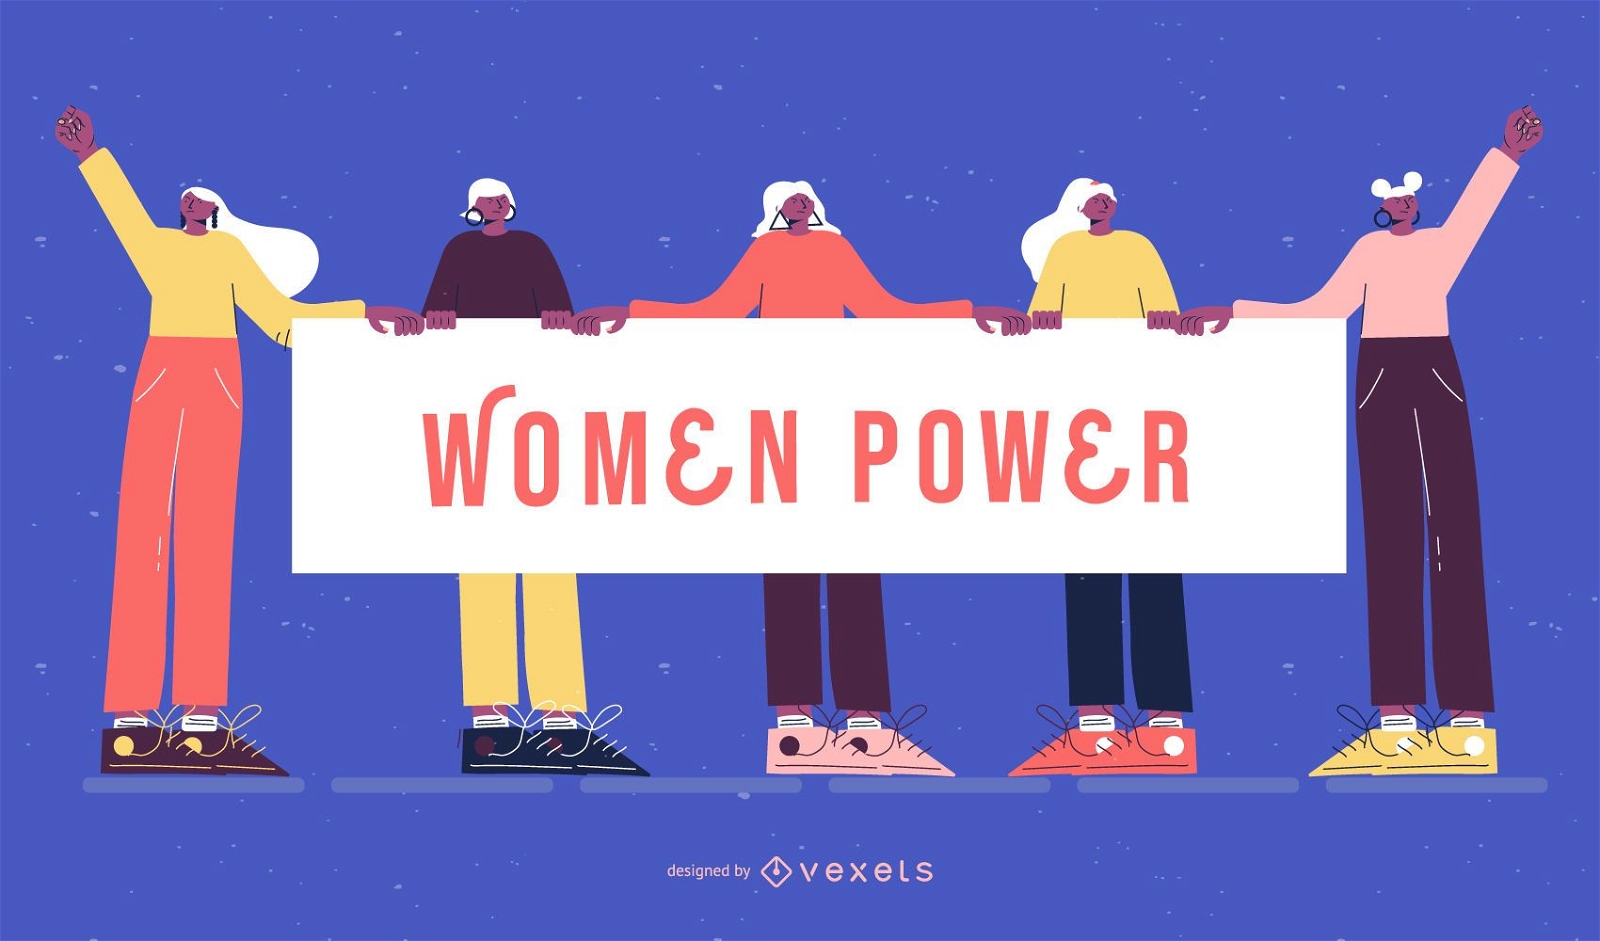 Women power women's day illustration